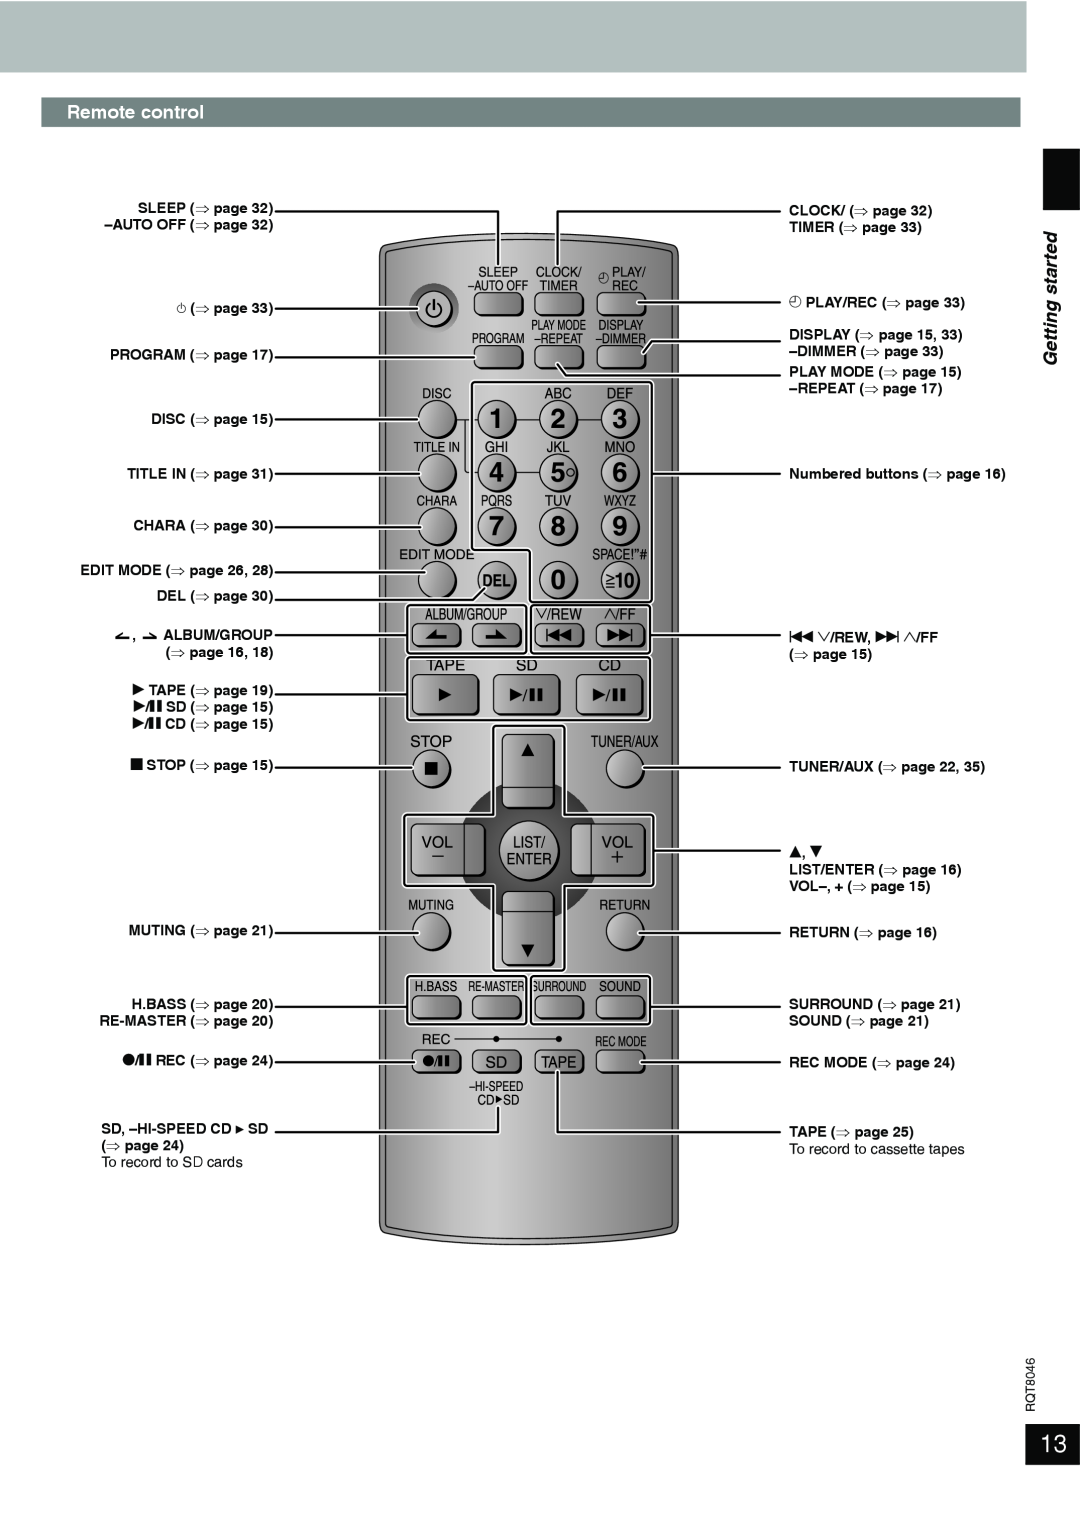 Panasonic SC-PM71SD manual Remote control, started, e, r 